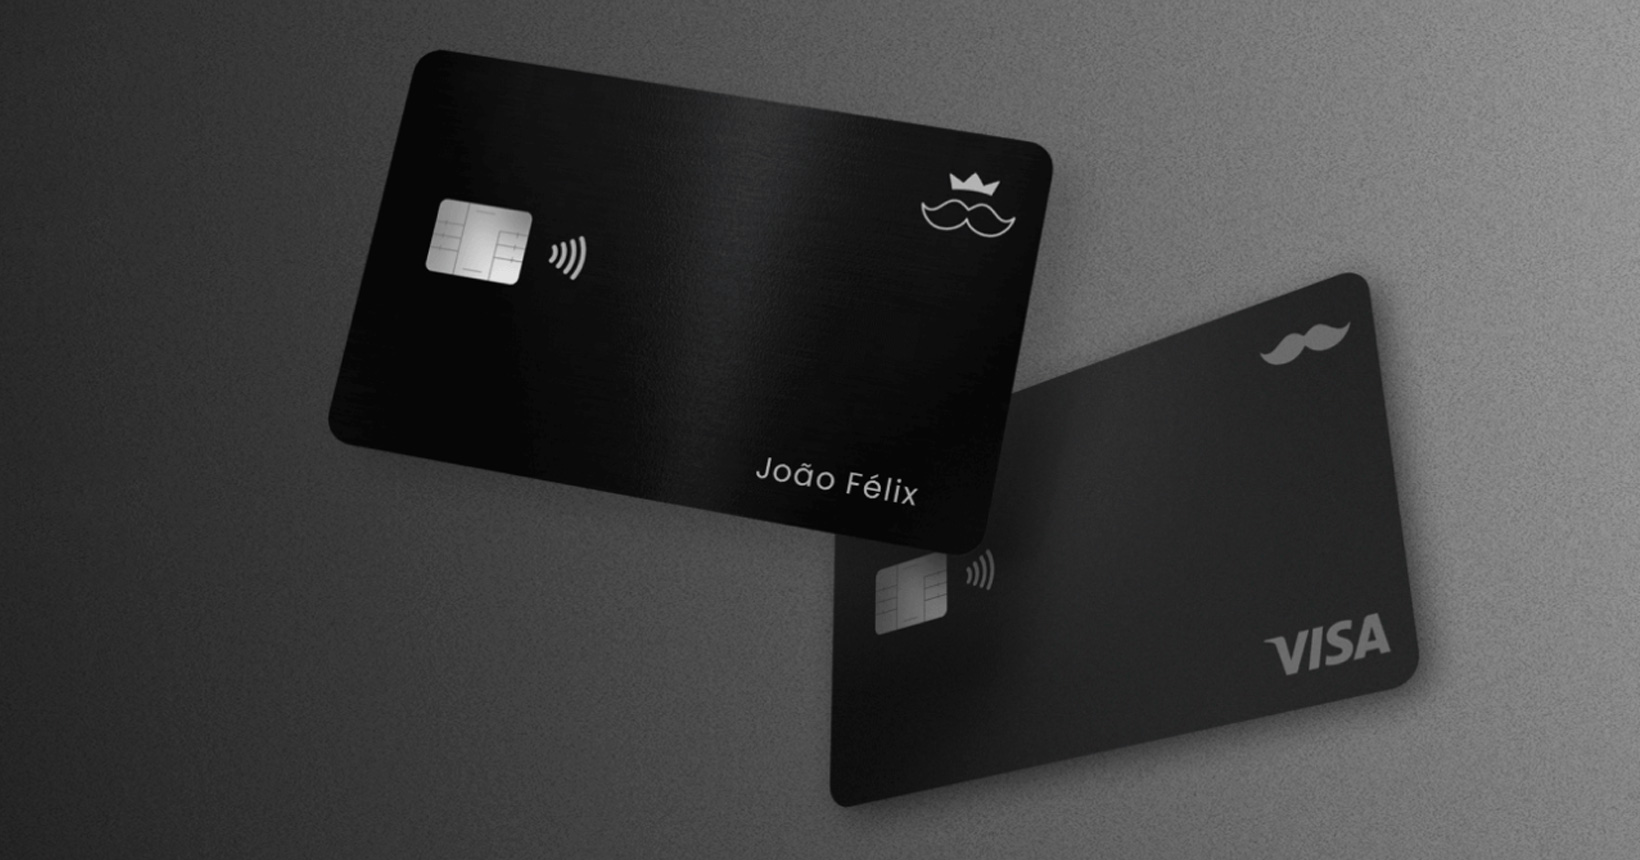 Cartão de crédito Rappi disponibiliza cashback e não possui anuidade. Veja como adquirir o seu!